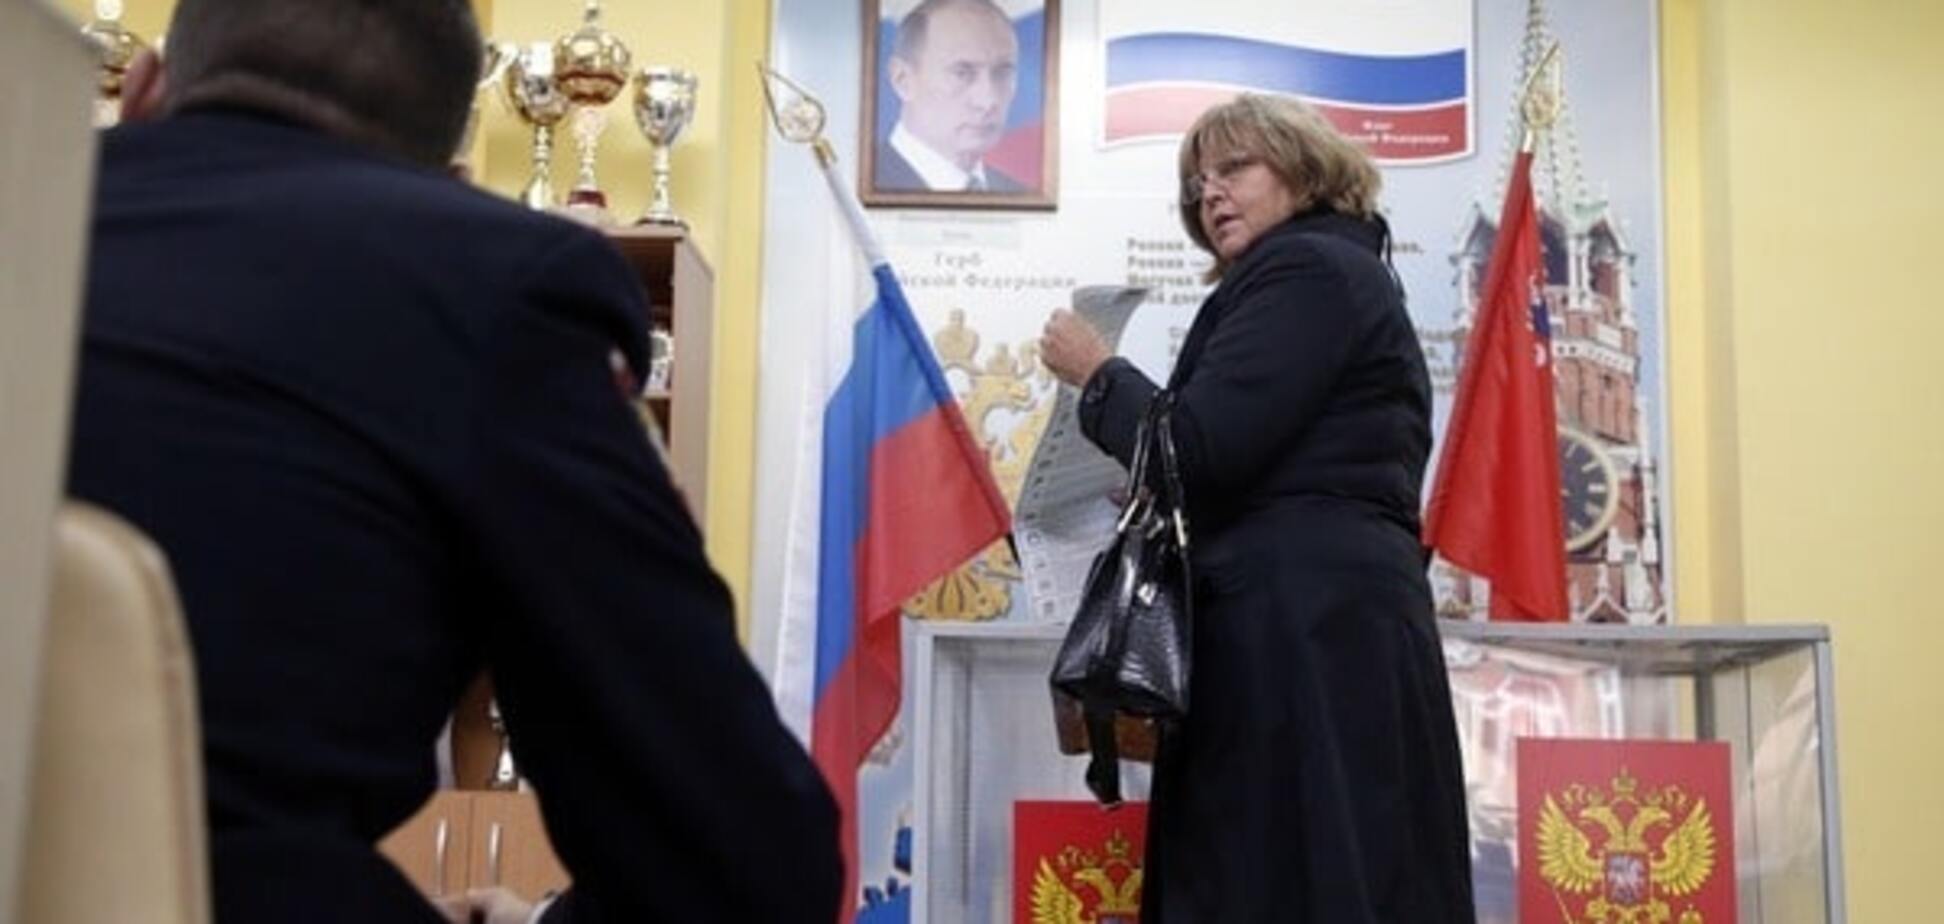 Невзоров на примере крепостных крестьян объяснил, как проходят выборы в России